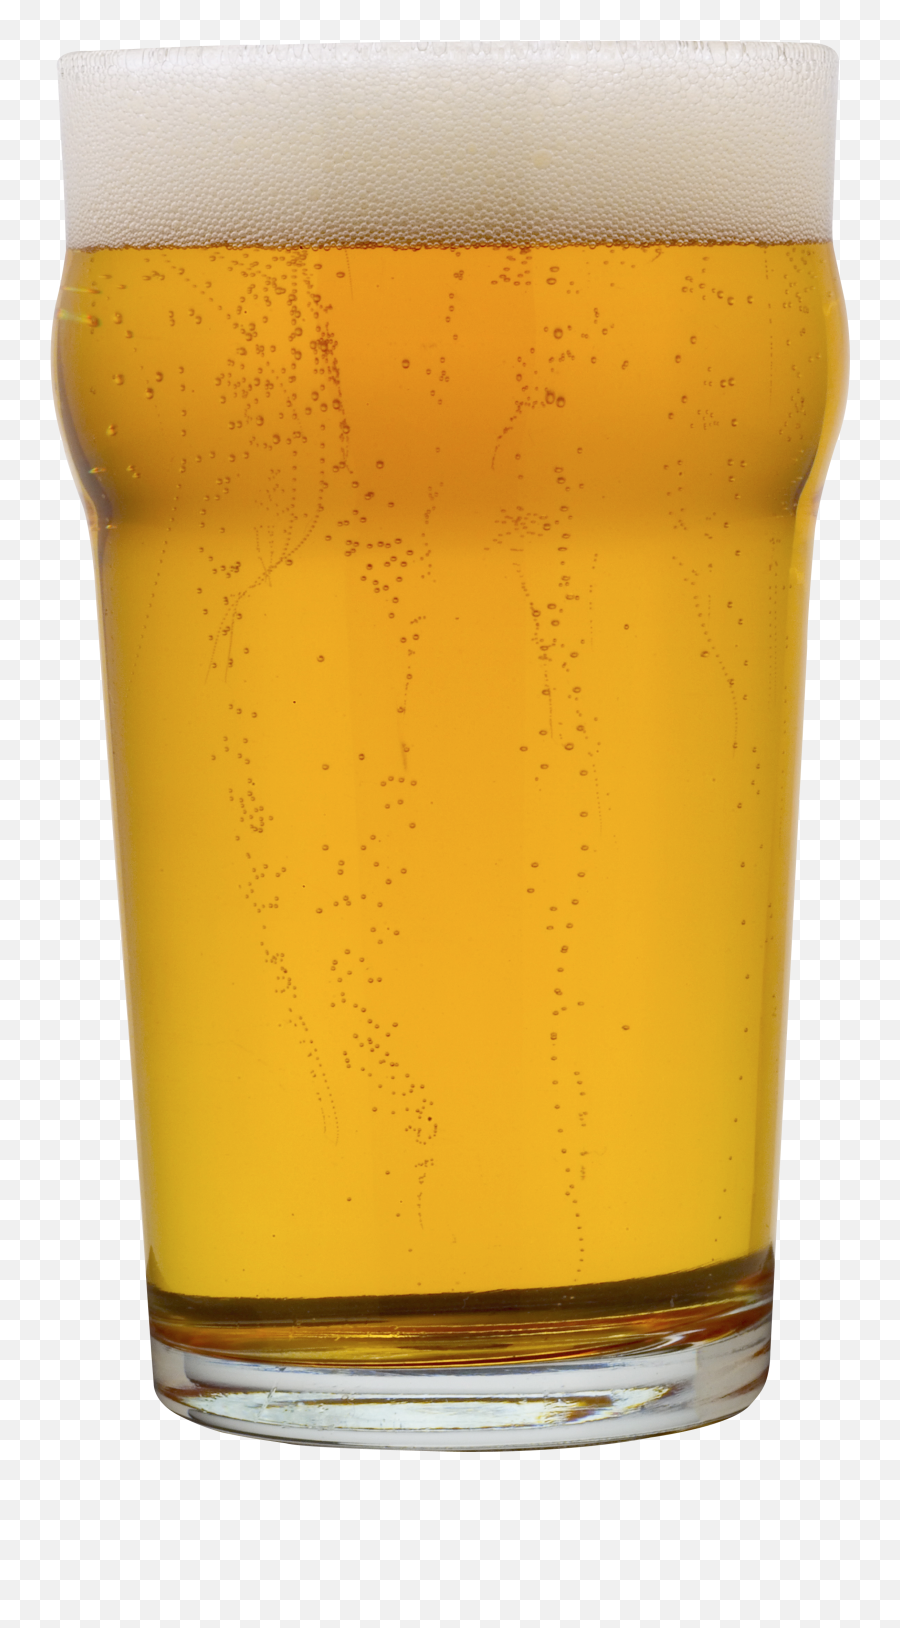 Beer Png Image - Transparent Transparent Background Glass Of Beer Emoji,Beer Transparent Background